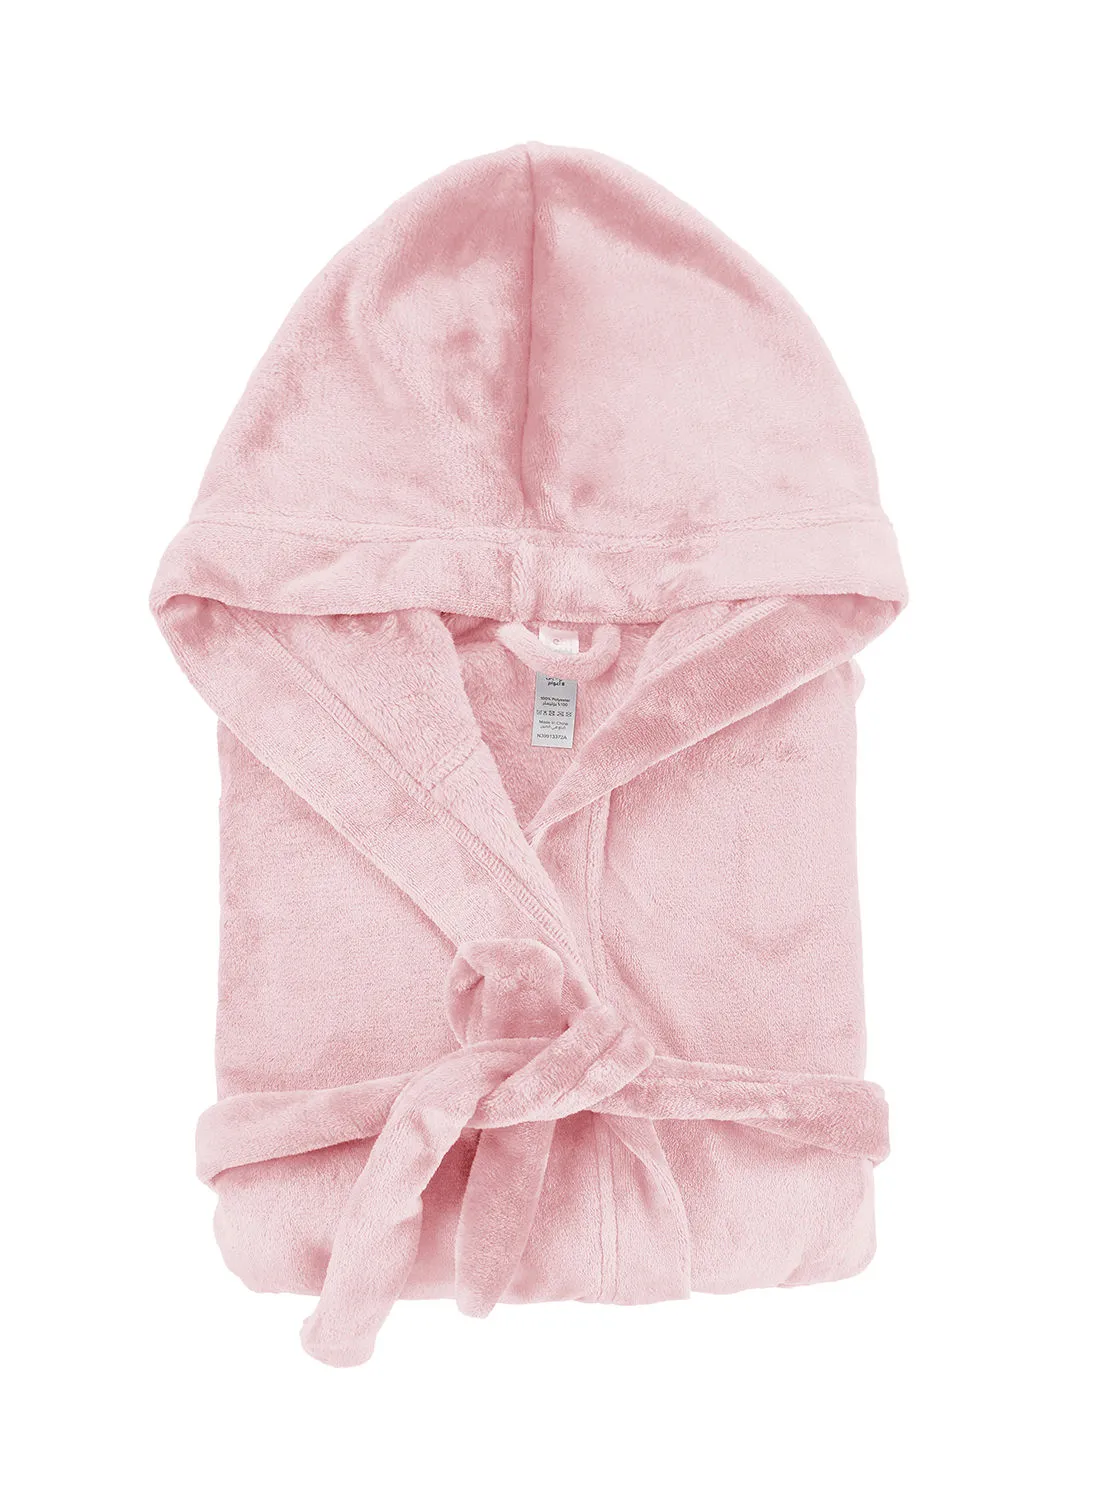 Bebi Bebi Kids Bathroom Towel Set - 240 GSM 100% Cotton - Pink Color - Lightweight - Kids Hooded Comfortable - For Girls & Boys - 1 Piece